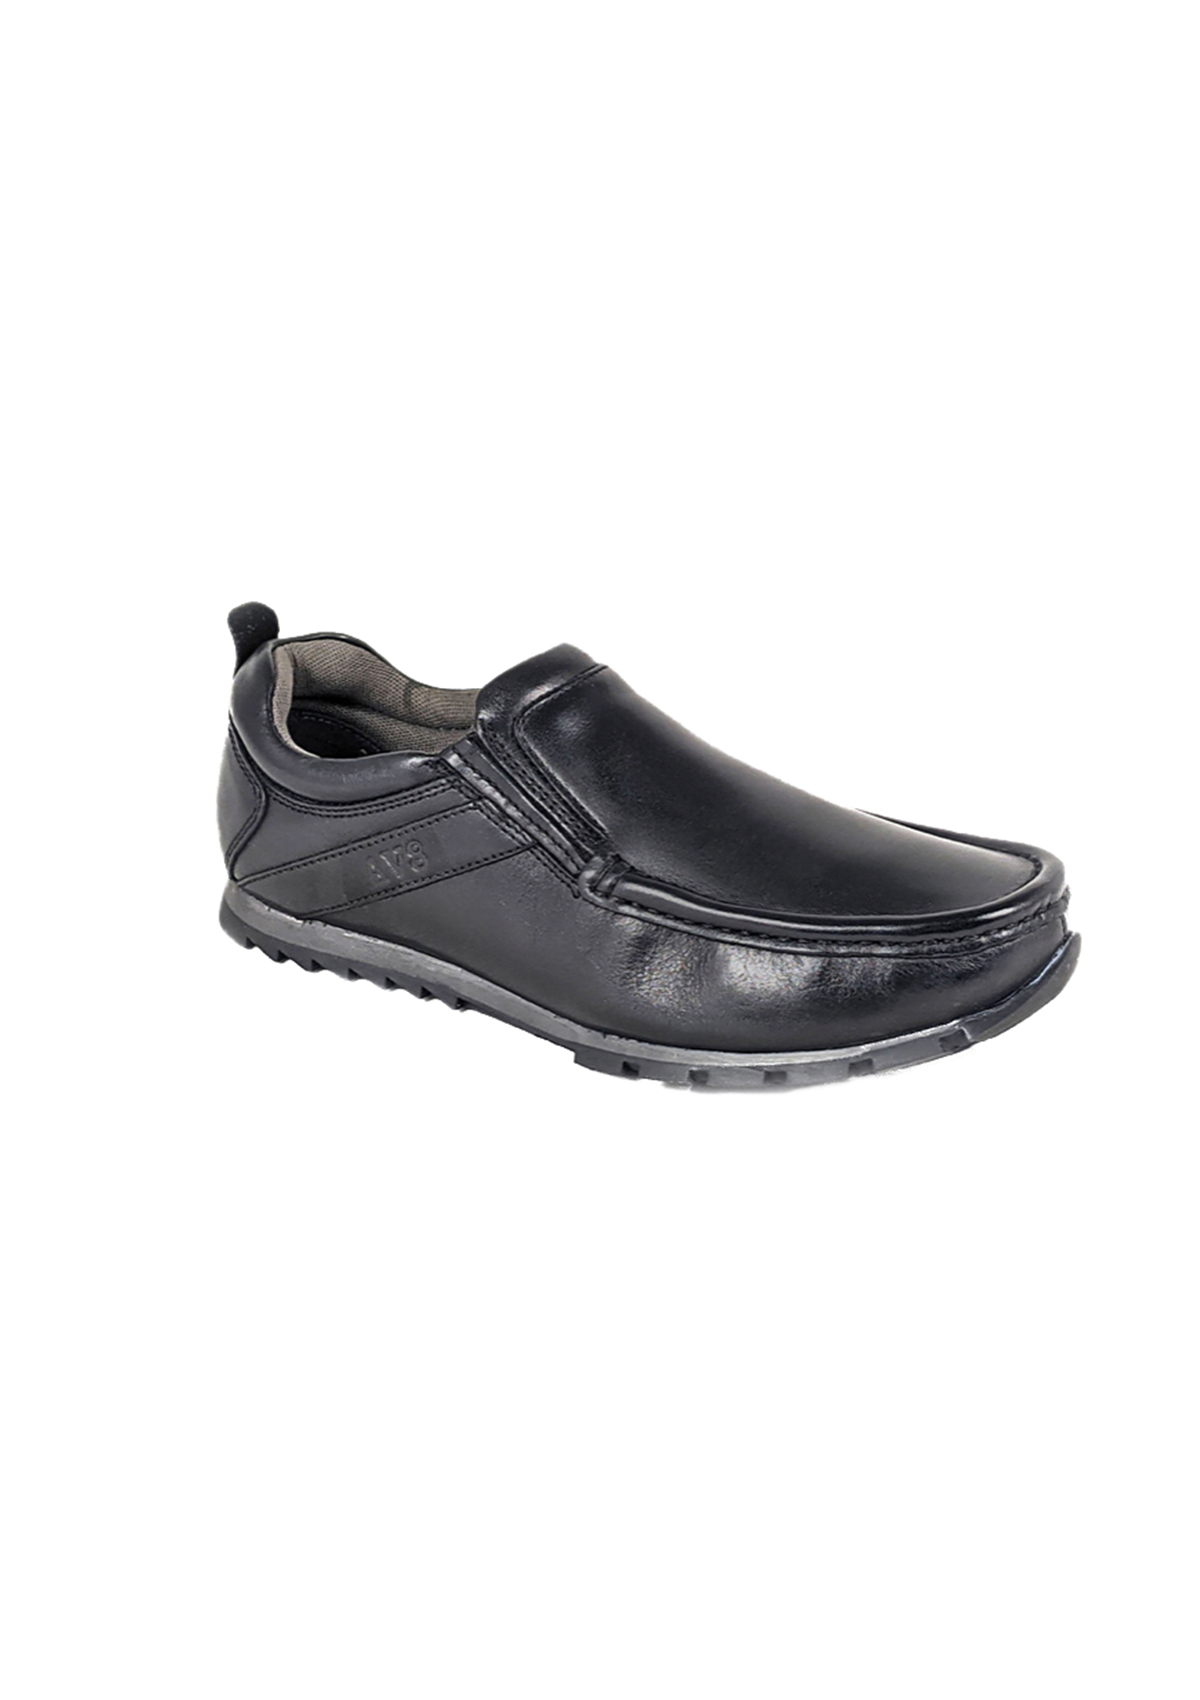 Dubarry Boys School Shoes Slip-On Kolo